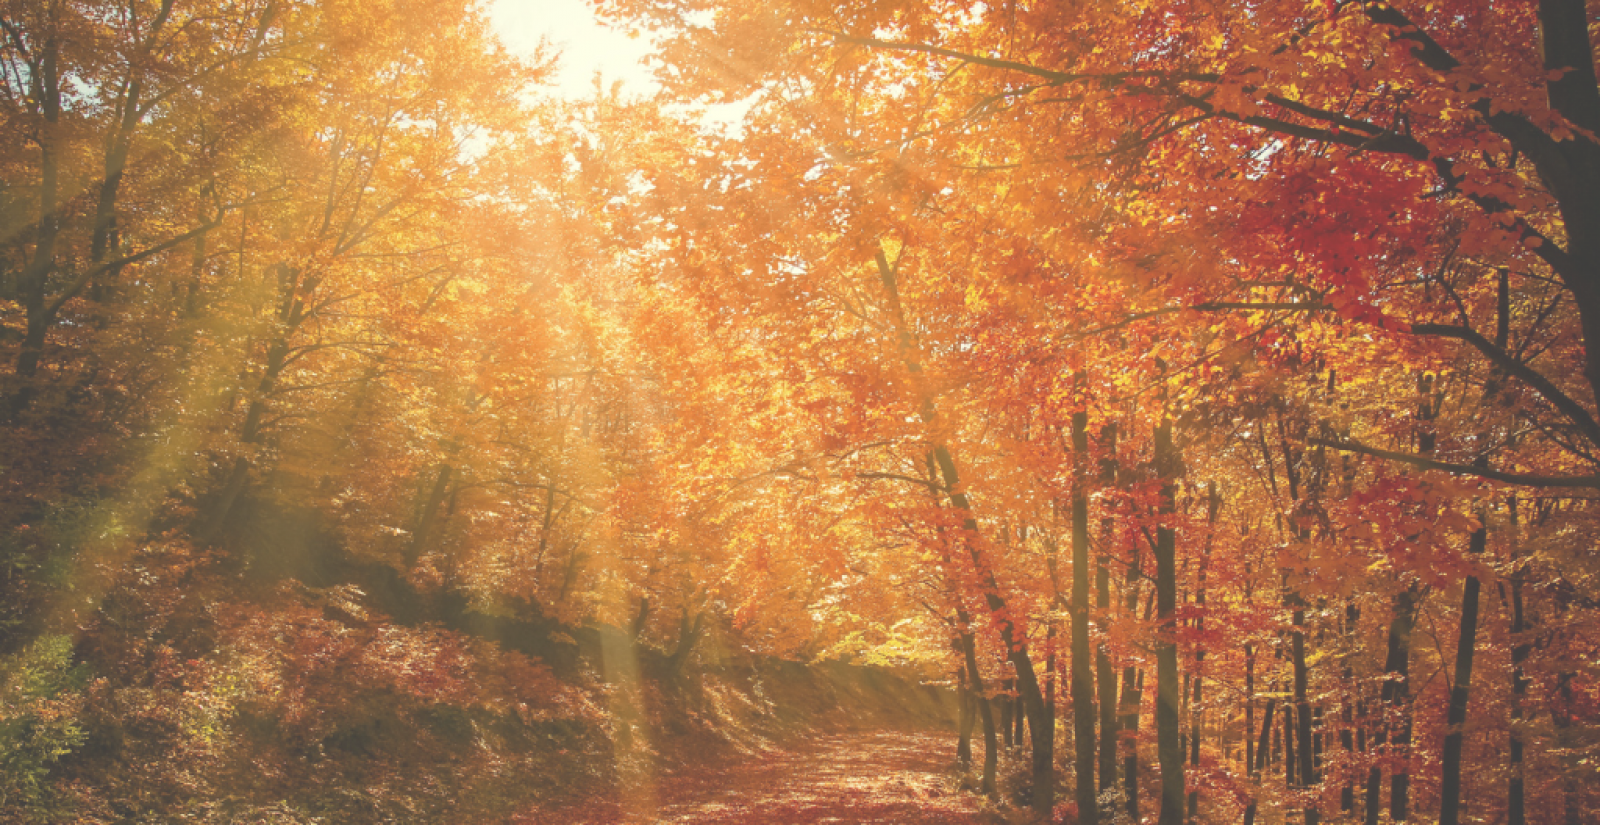 Autumn trees in sunlight